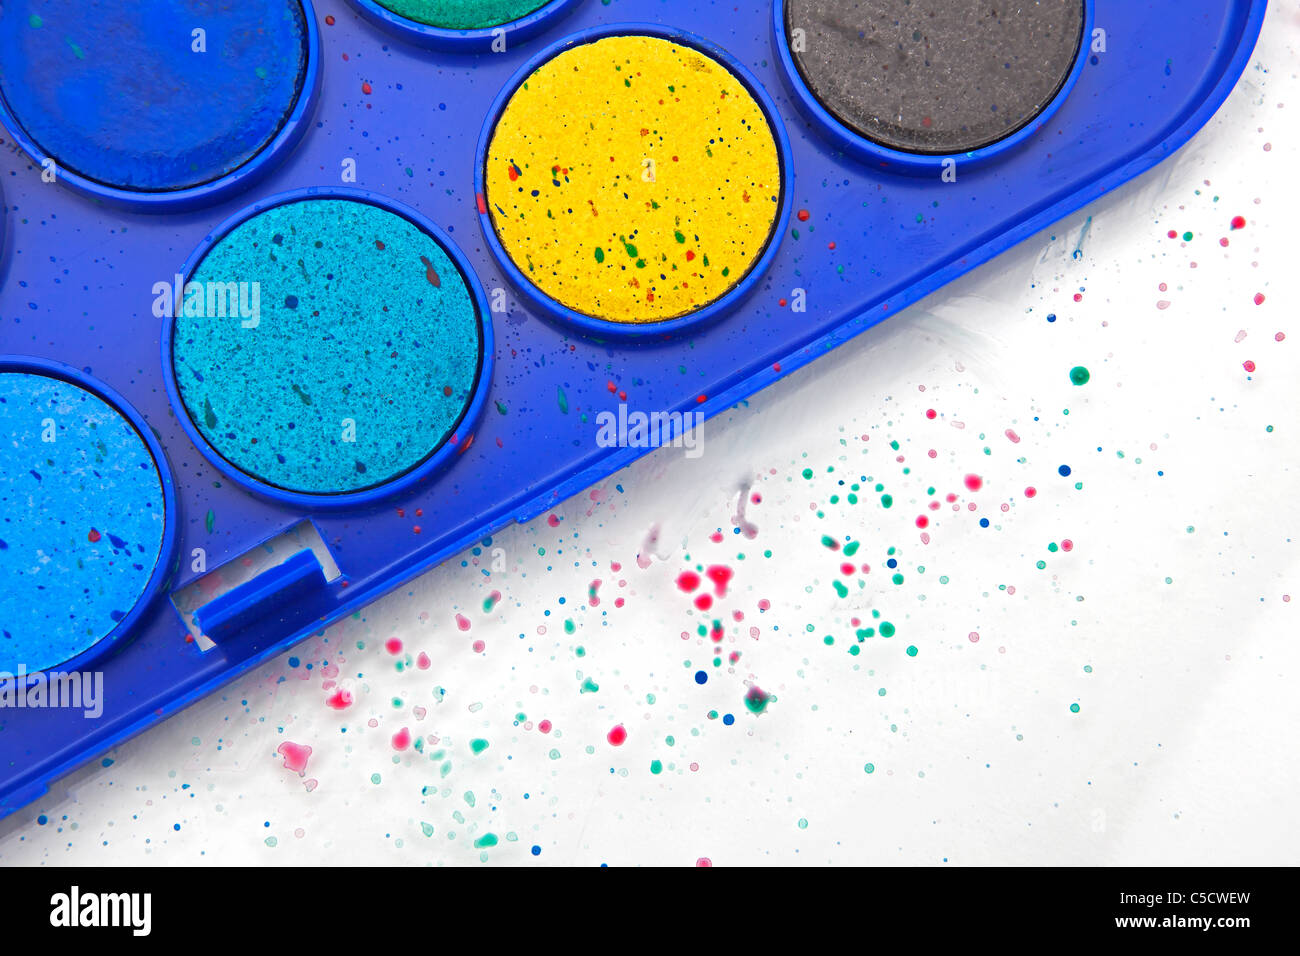 Casella di vernice con acqua-colori e dagli spruzzi di vernice Foto Stock